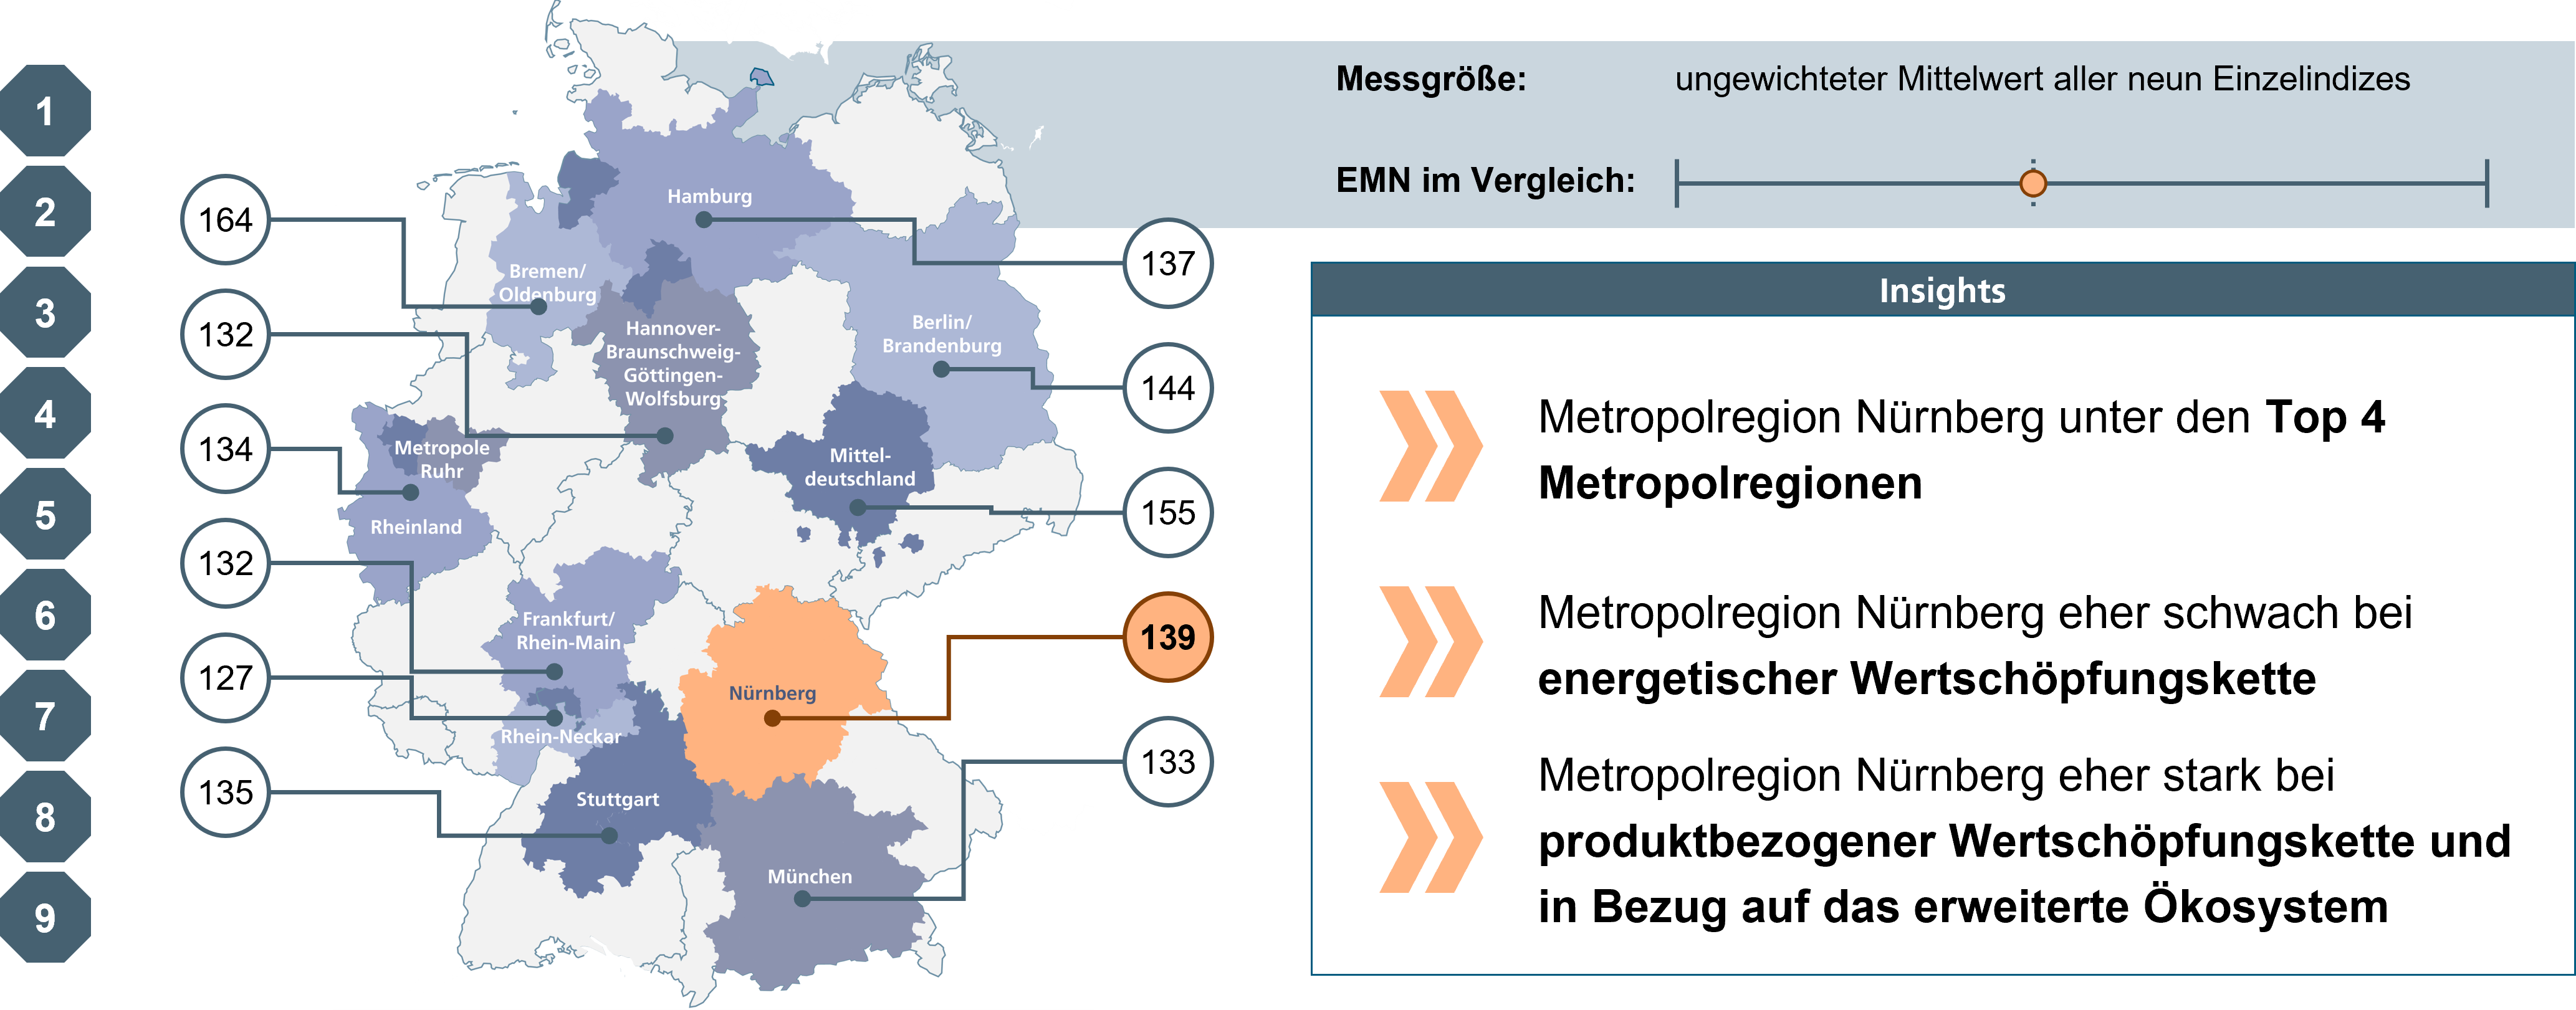 Überblick über Benchmarking der Metropolregionen - Gesamtranking